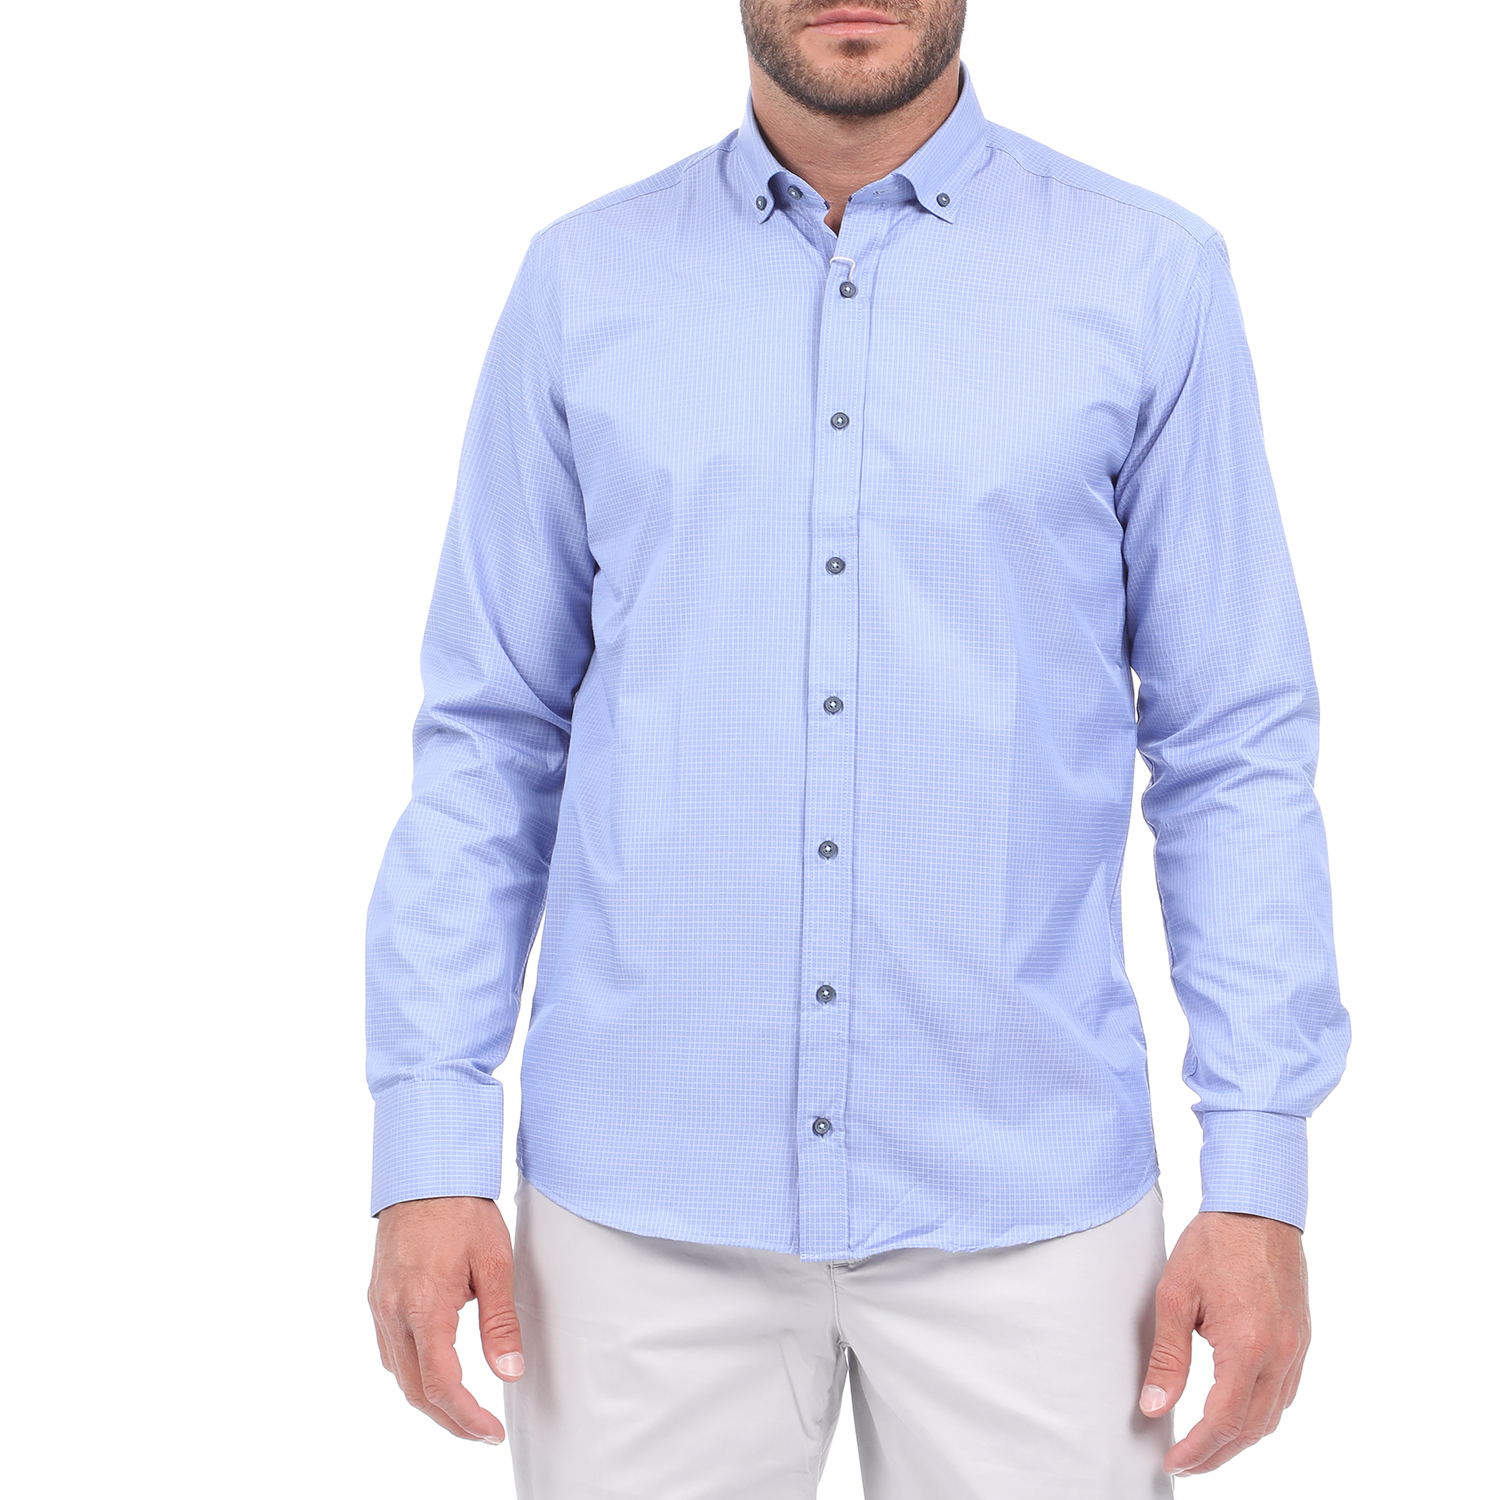 Ανδρικά/Ρούχα/Πουκάμισα/Μακρυμάνικα MARTIN & CO - Ανδρικό πουκάμισο MARTIN & CO SLIM FIT μπλε